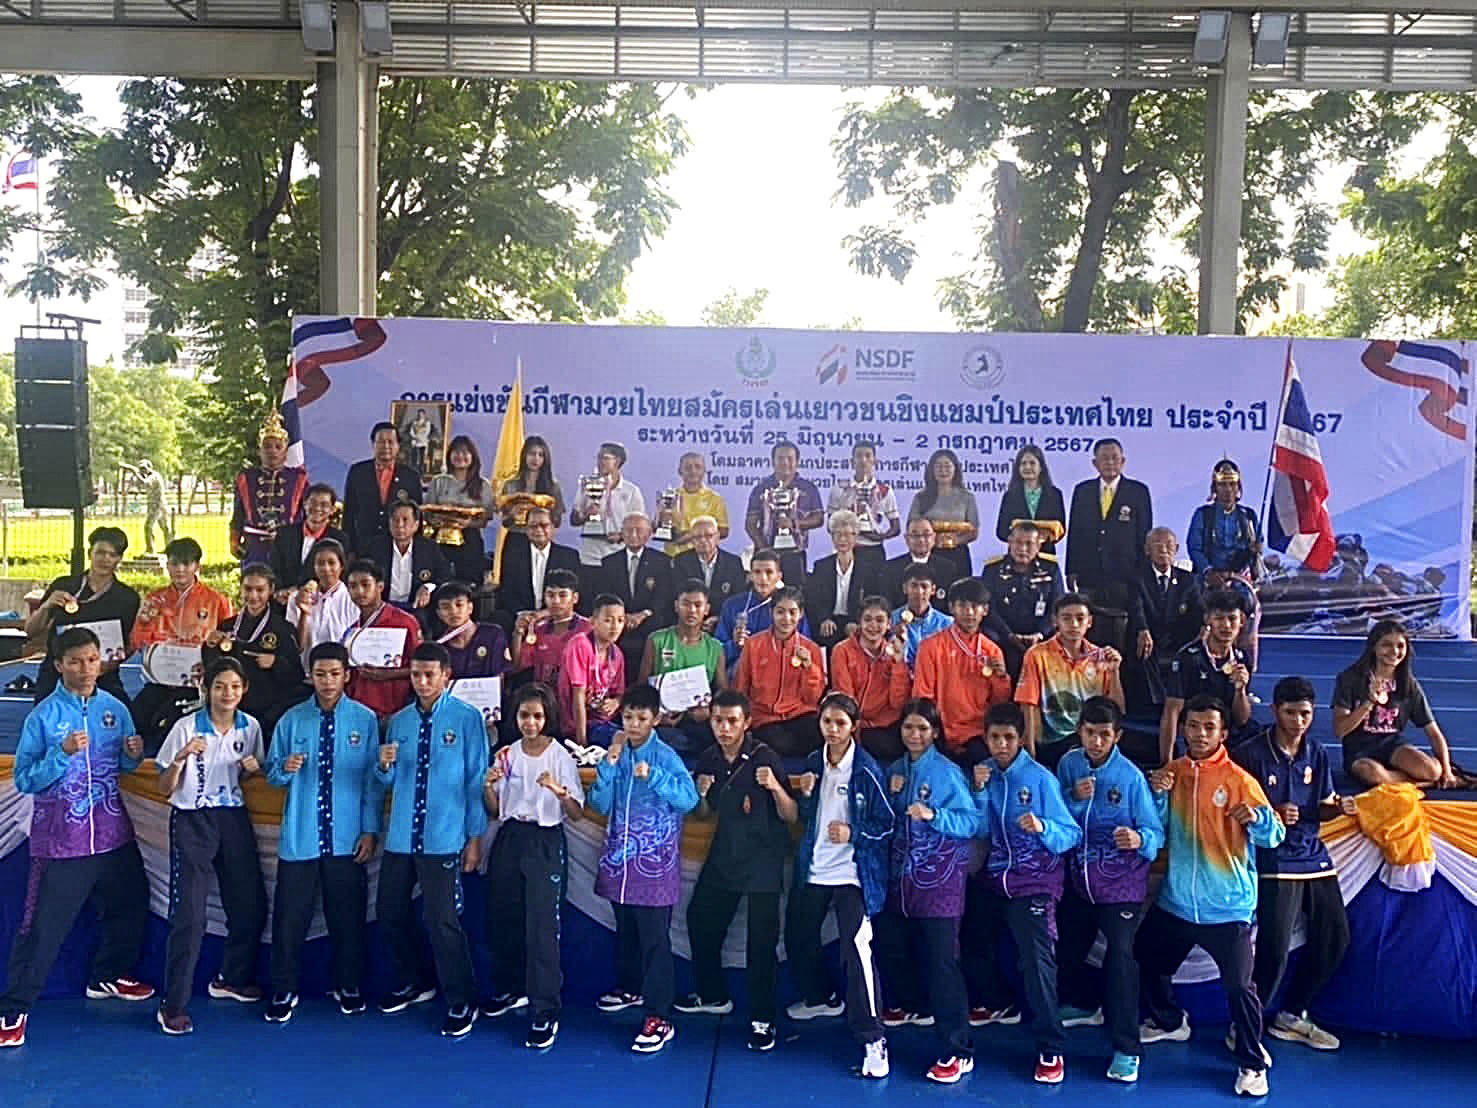 ทัพนักกีฬามวยไทยสมัครเล่นโรงเรียนกีฬา อบจ.พิษณุโลก คว้าถ้วยรางวัลคะแนนรวมทีมชาย การแข่งขันกีฬามวยไทยสมัครเล่นเยาวชนชิงแชมป์แห่งประเทศไทย ประจำปี 2567